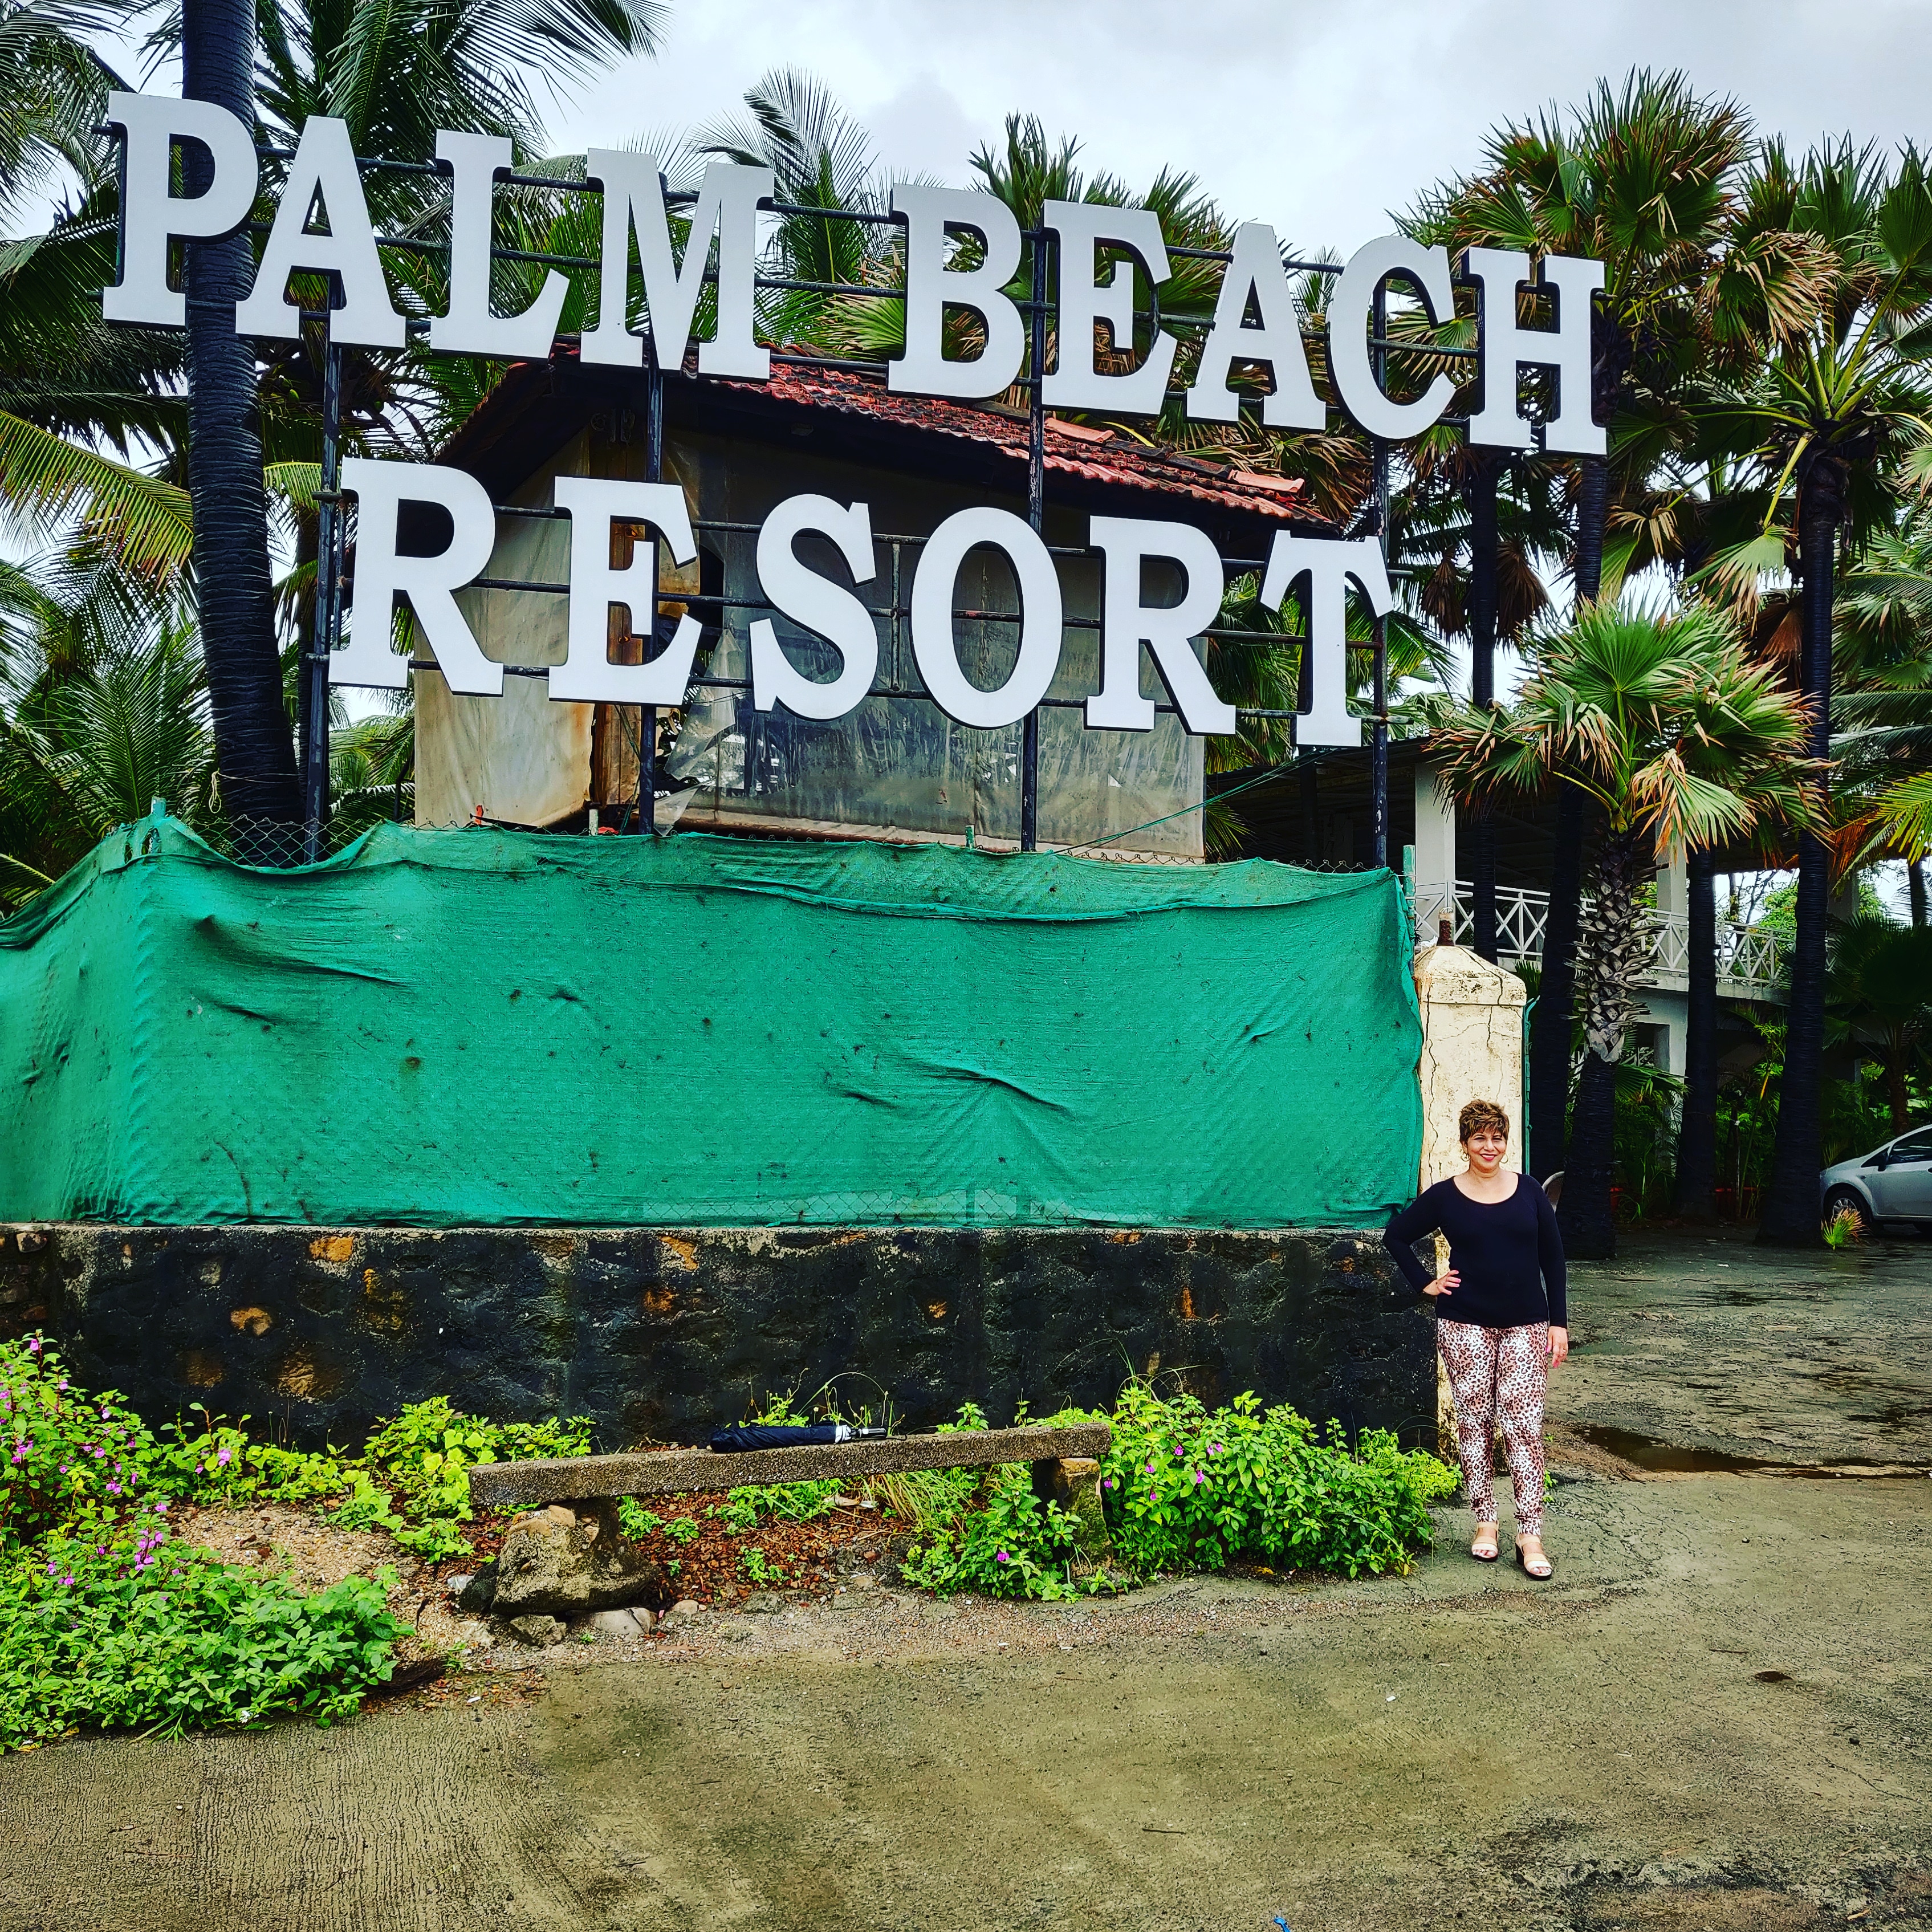 Palm Beach Resort In Manori Near Gorai, Mumbai